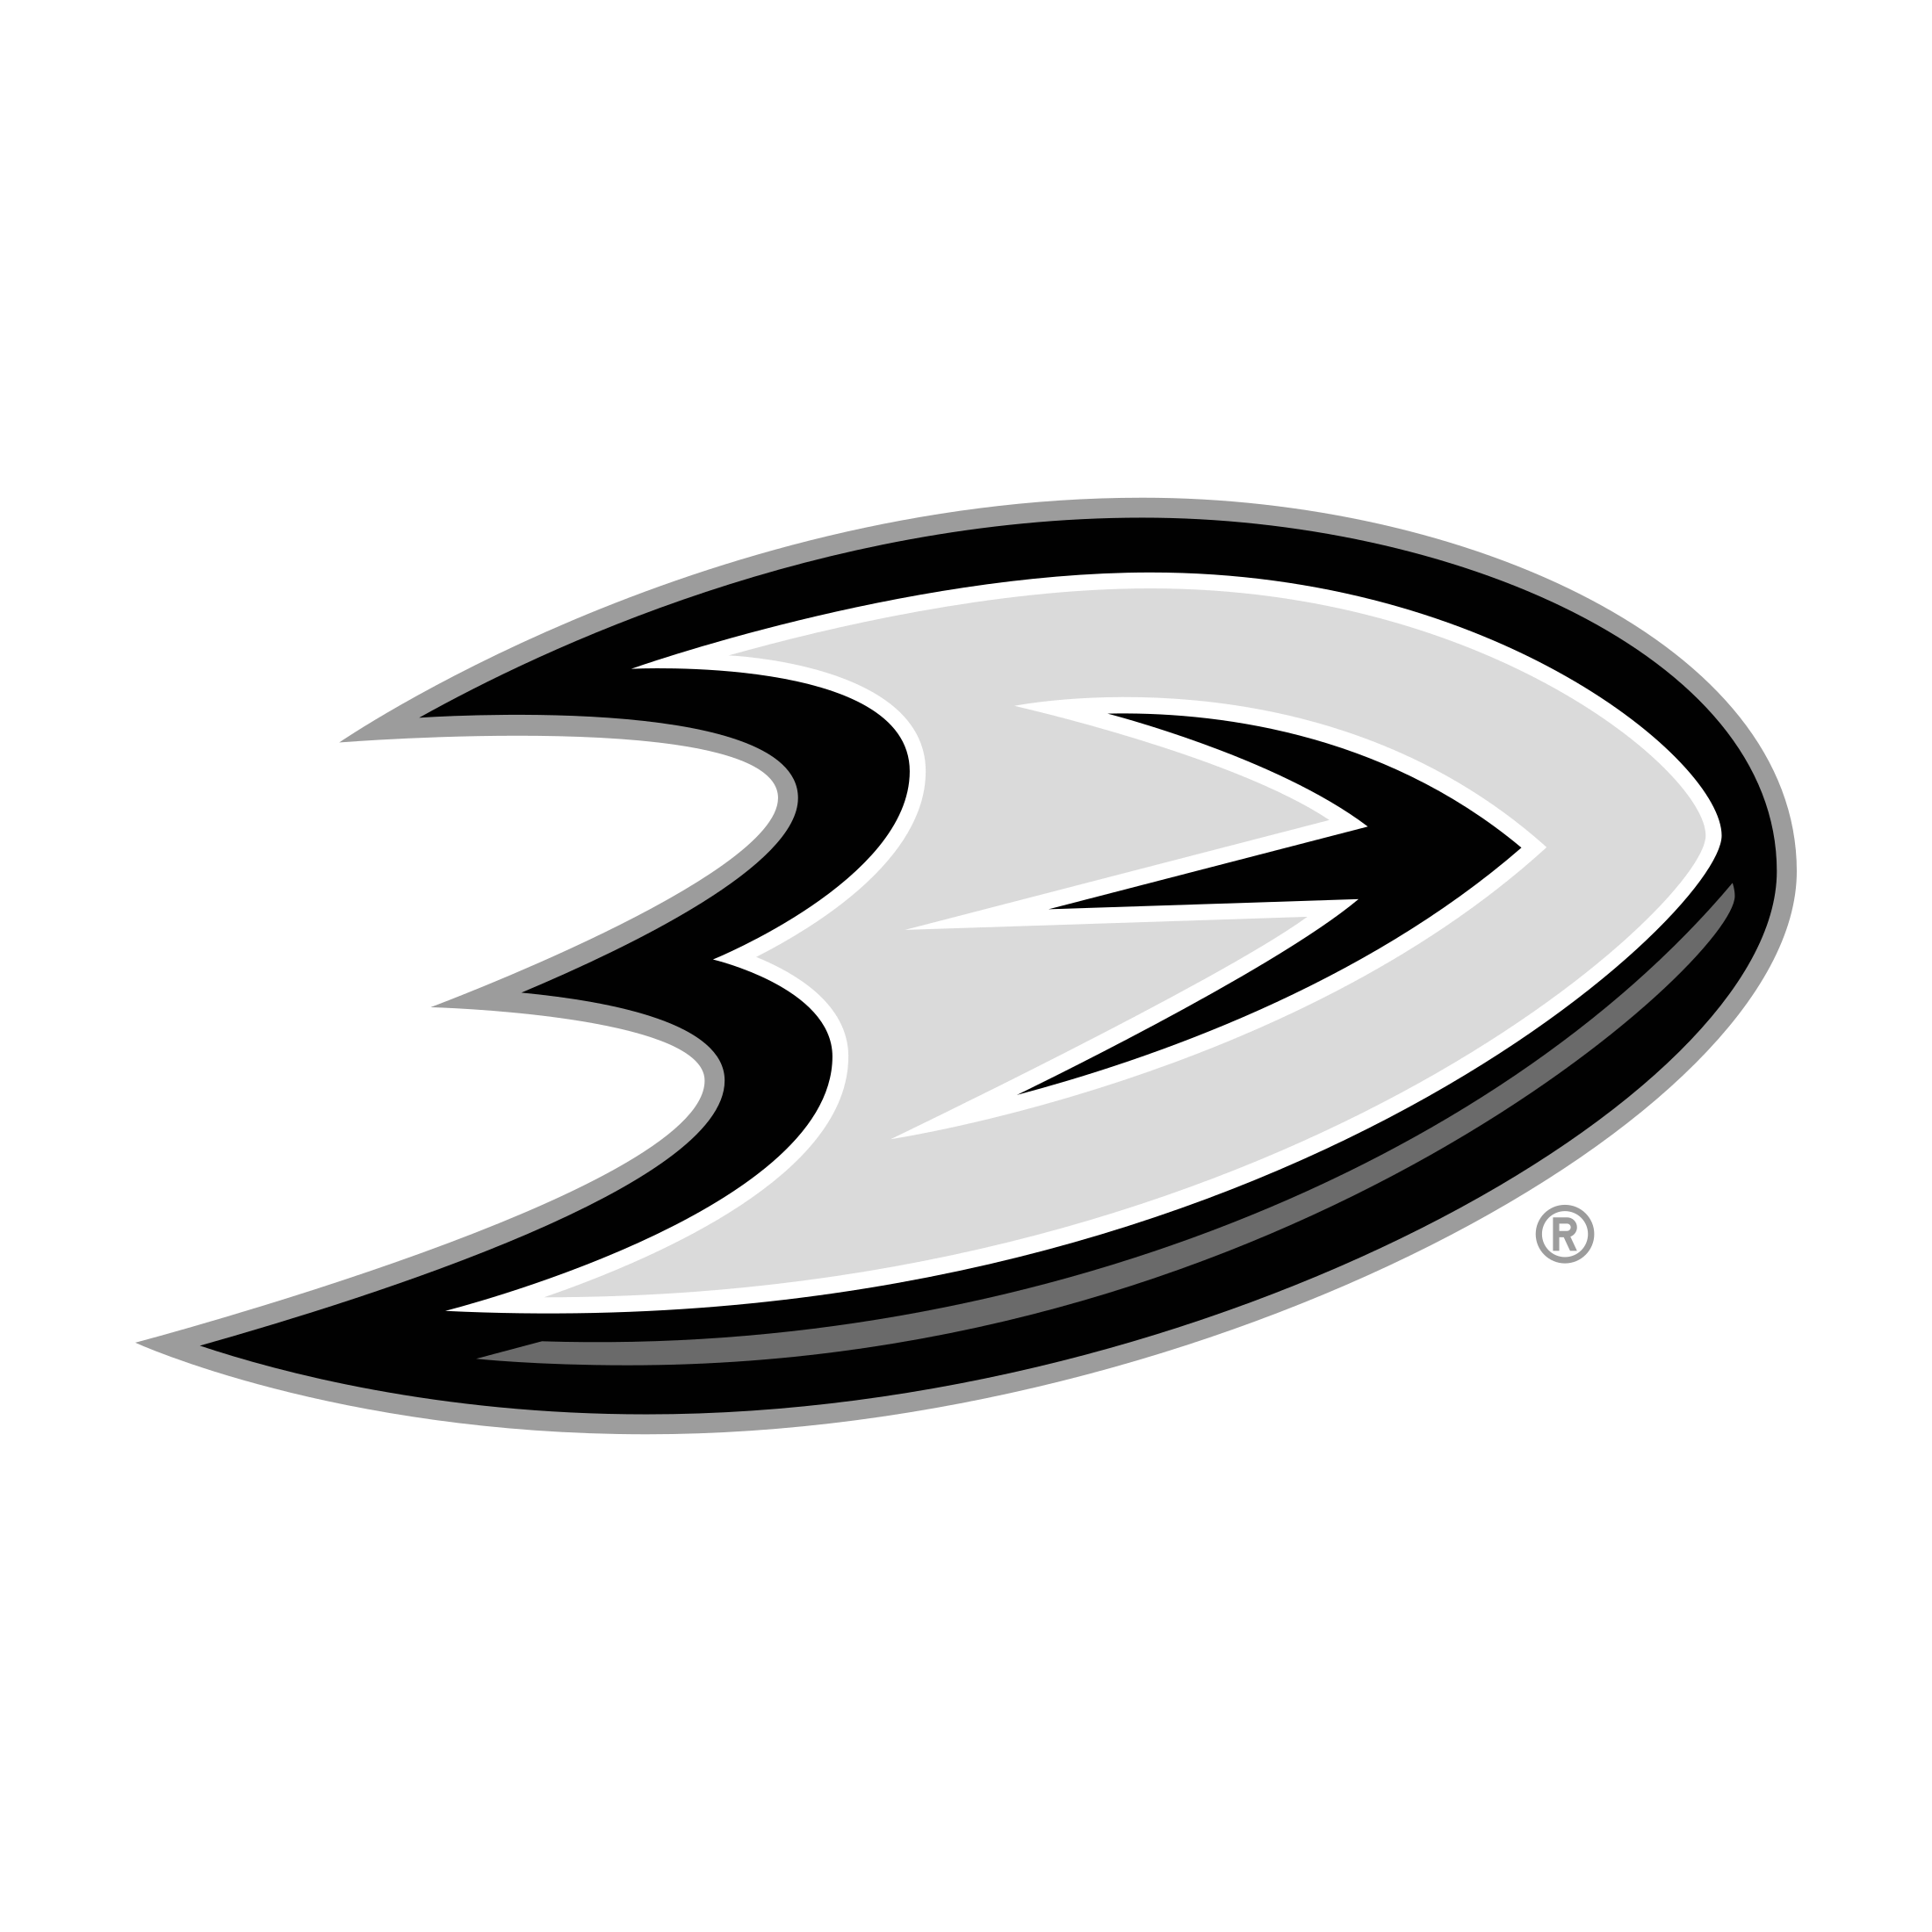 Anaheim Logo - Anaheim Ducks Logo PNG Transparent & SVG Vector - Freebie Supply